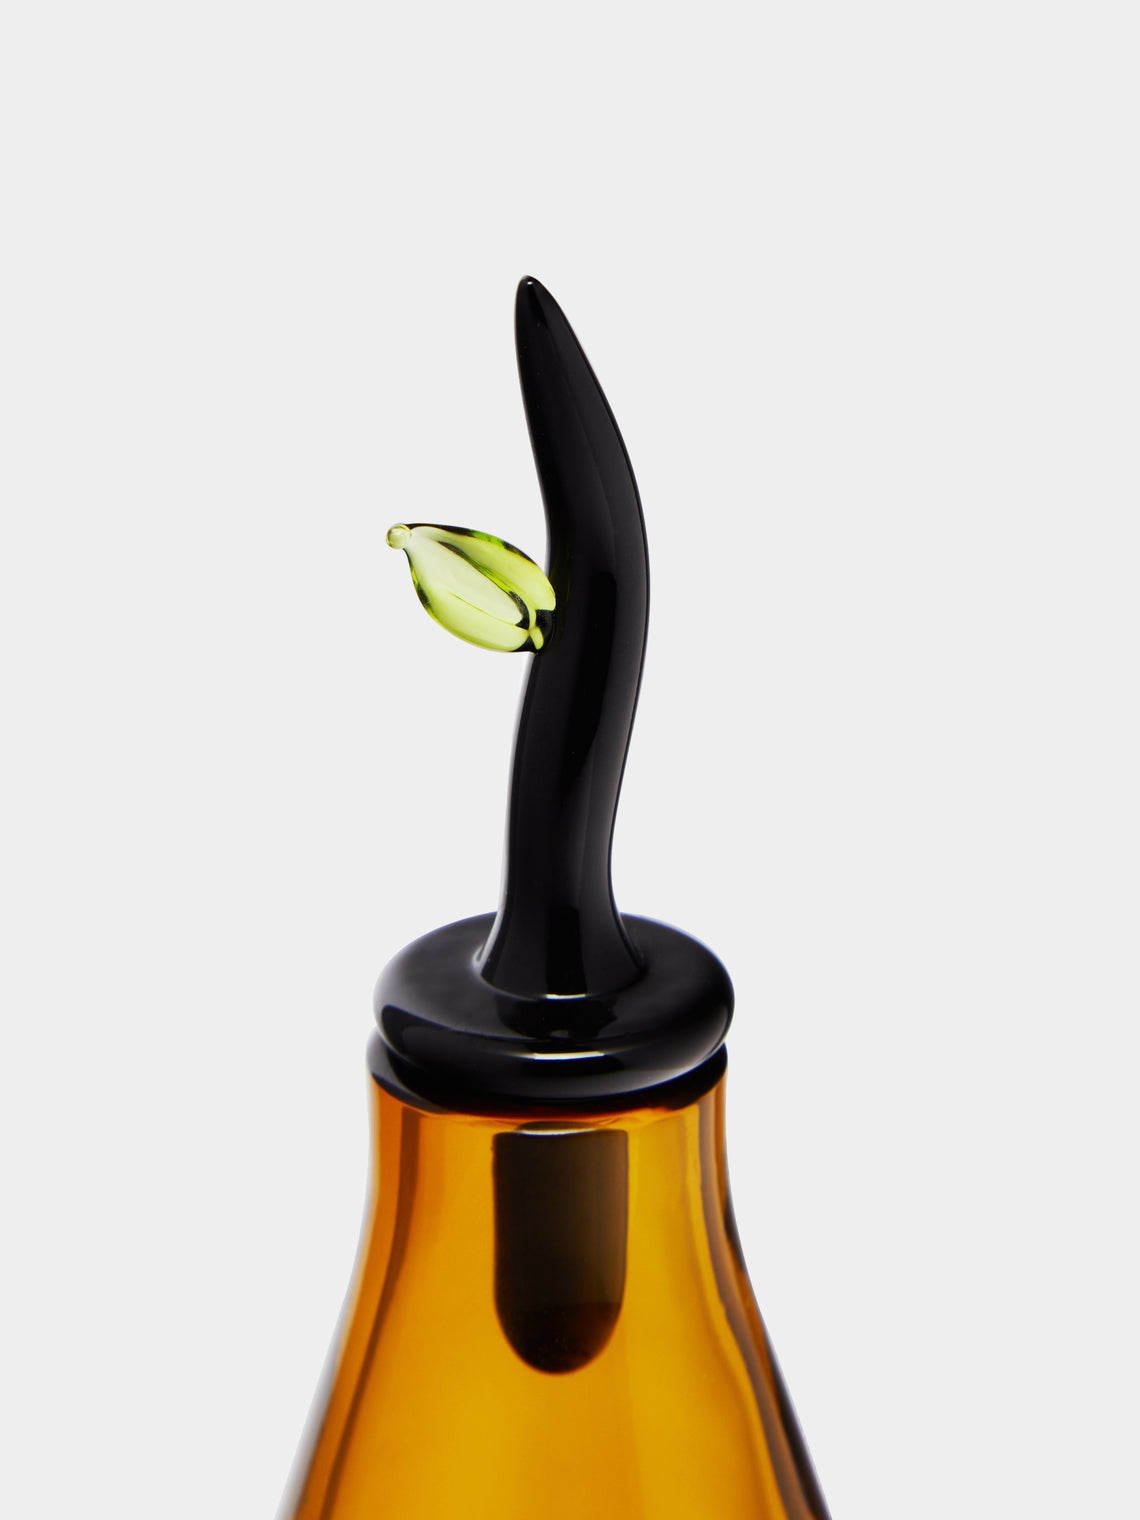 Venini - 1989 Laura de Santillana Monofiore Hand-Blown Murano Glass Perfume Bottle -  - ABASK